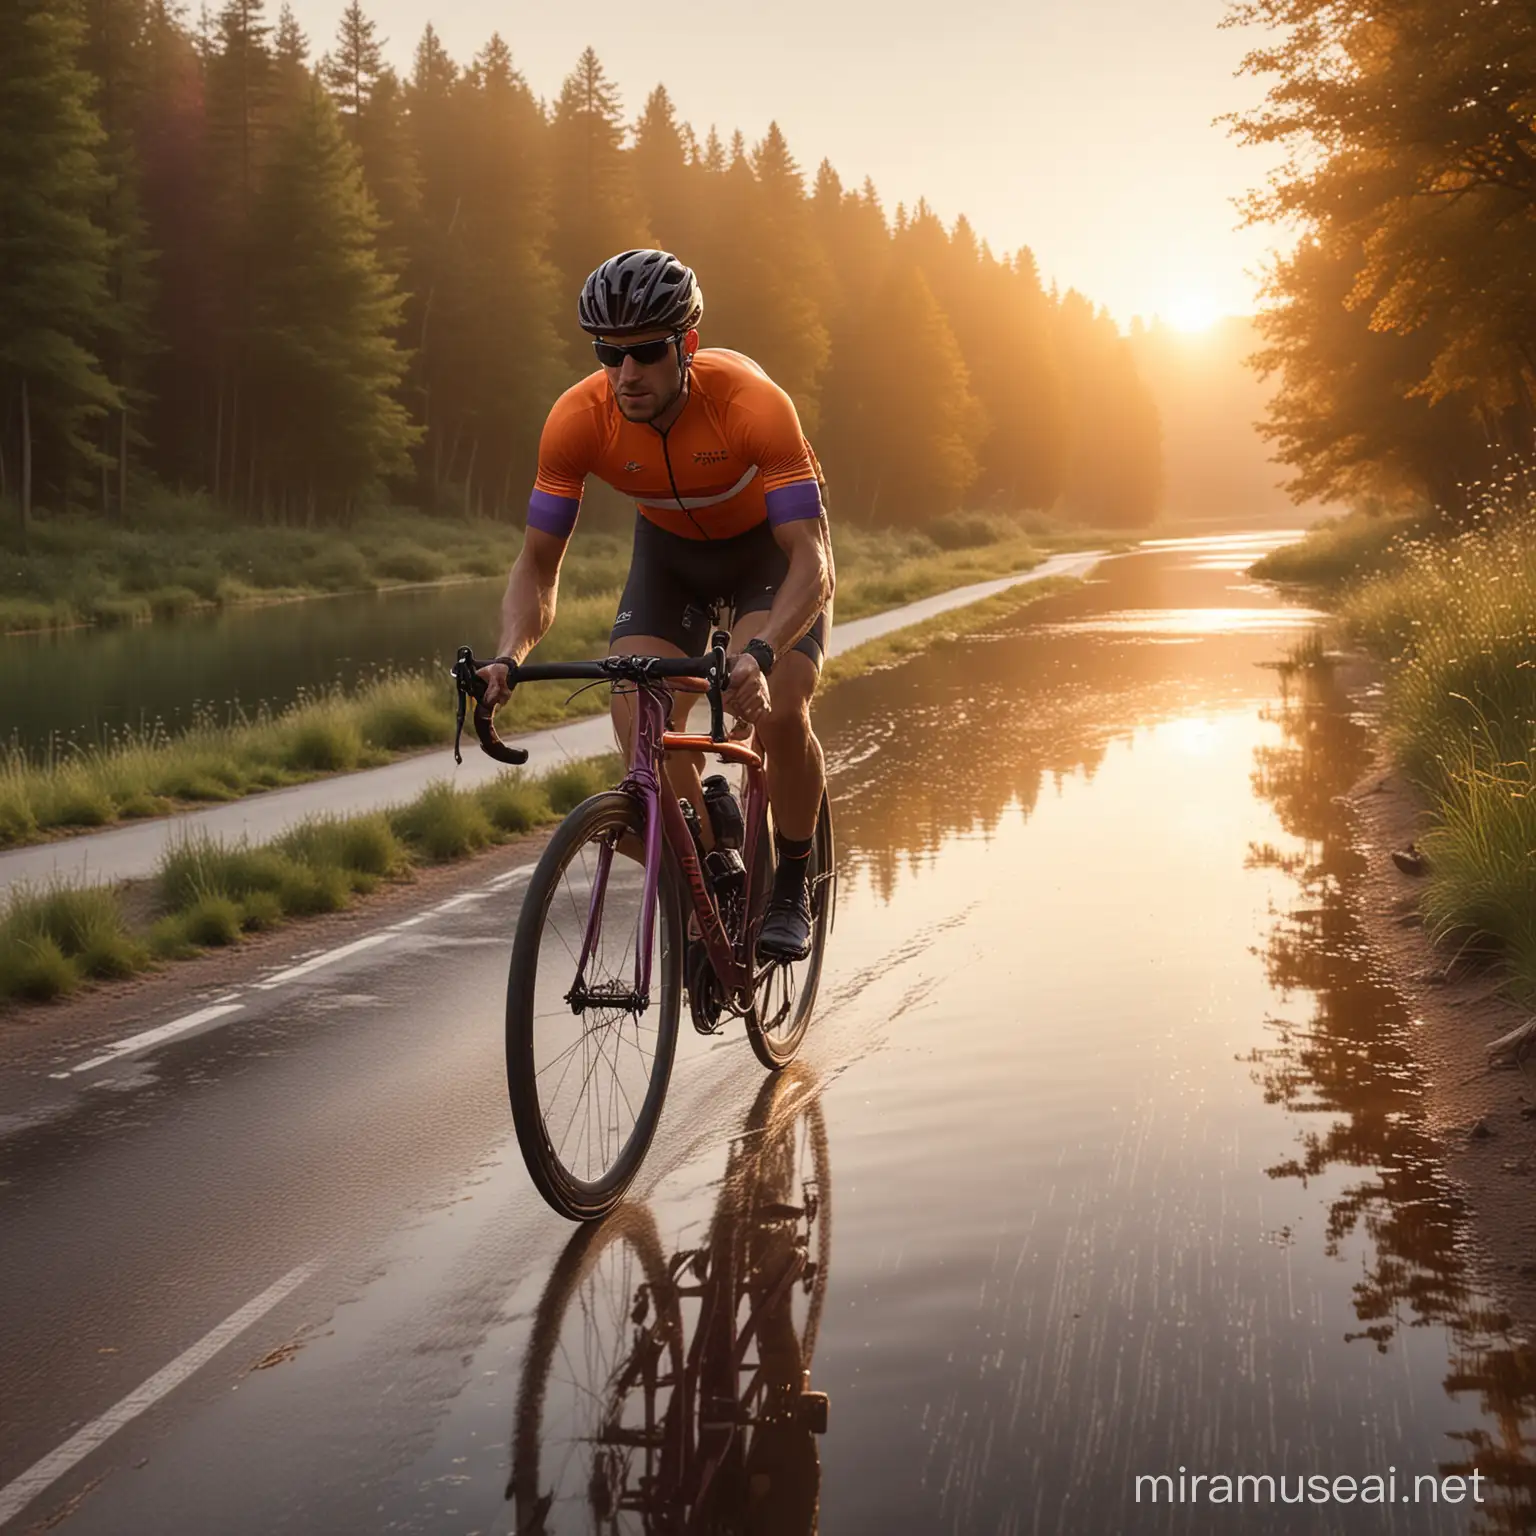 Cyclist Riding Along Serene Lake at Sunset